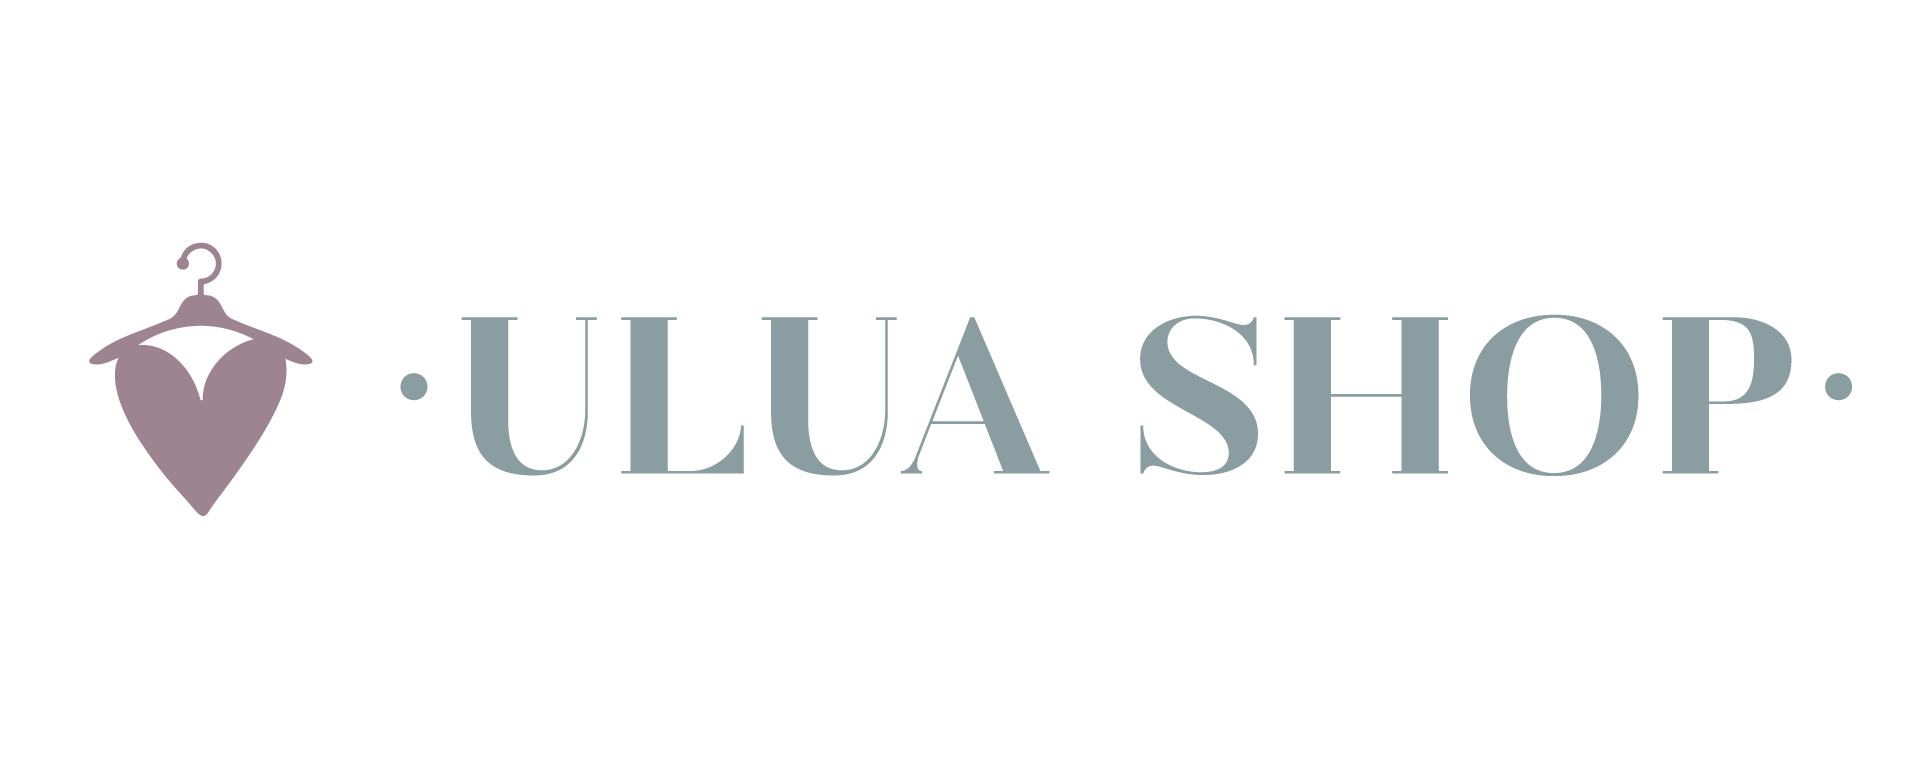 UluaShop | Tienda de moda lowcost en Algeciras